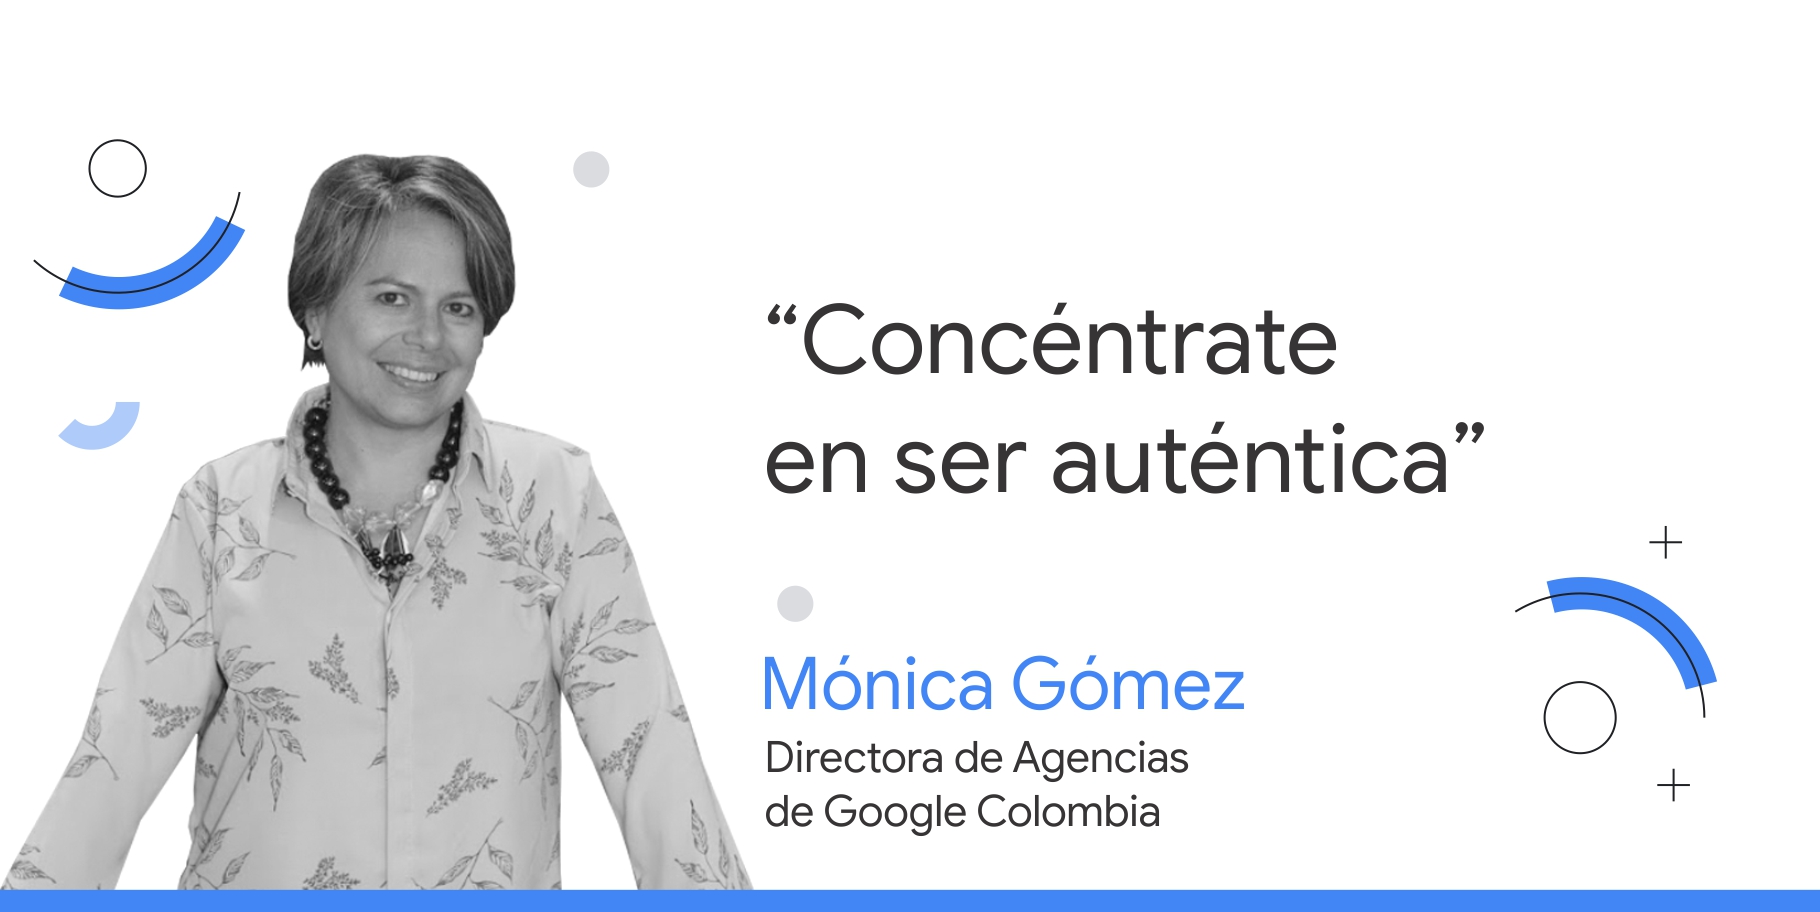 Foto en blanco y negro de Mónica Gómez, directora de Agencias de Google Colombia, junto al consejo que dice: “Concéntrate en ser auténtica”.